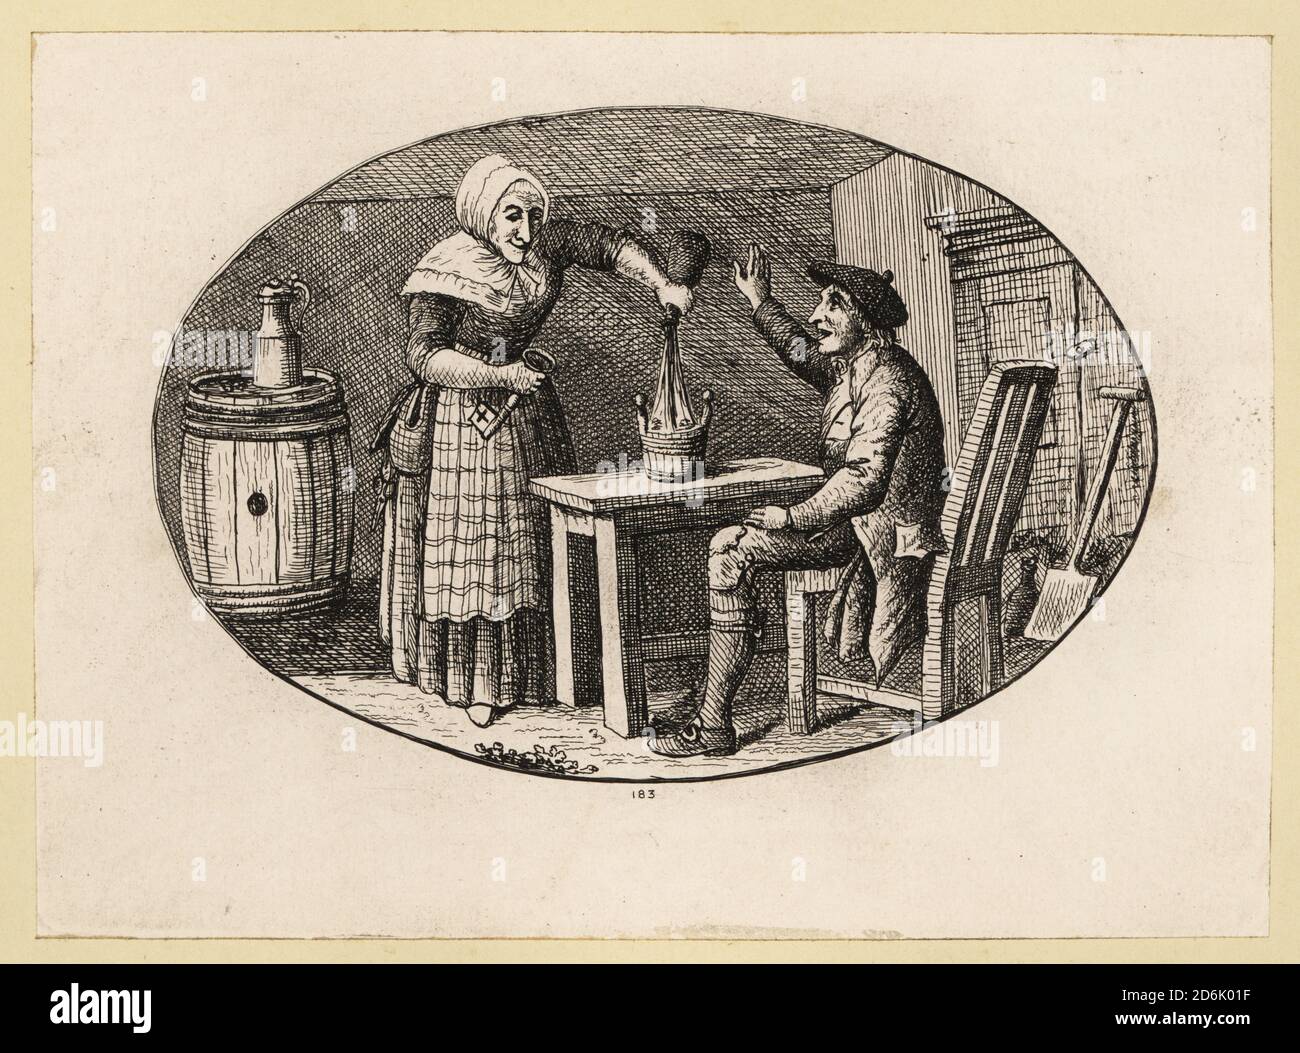 Schottische Frau, die eine Flasche Ale in einen Eimer auf einem Tisch für einen Mann in einer Tam-O’shanter Kappe gießt, 18. Jahrhundert. Sie trägt eine Kapuze und einen Noppen, Schürze und einen Tartanrock und hält einen großen Schlüssel. Das Zimmer hat einen Holztisch, Stuhl, Fass, Schrank und Schaufel. Kupferstich von David Deuchar aus EINER Sammlung von Radierungen nach den bedeutendsten Meistern der niederländischen und flämischen Schulen, Edinburgh, 1803. Stockfoto